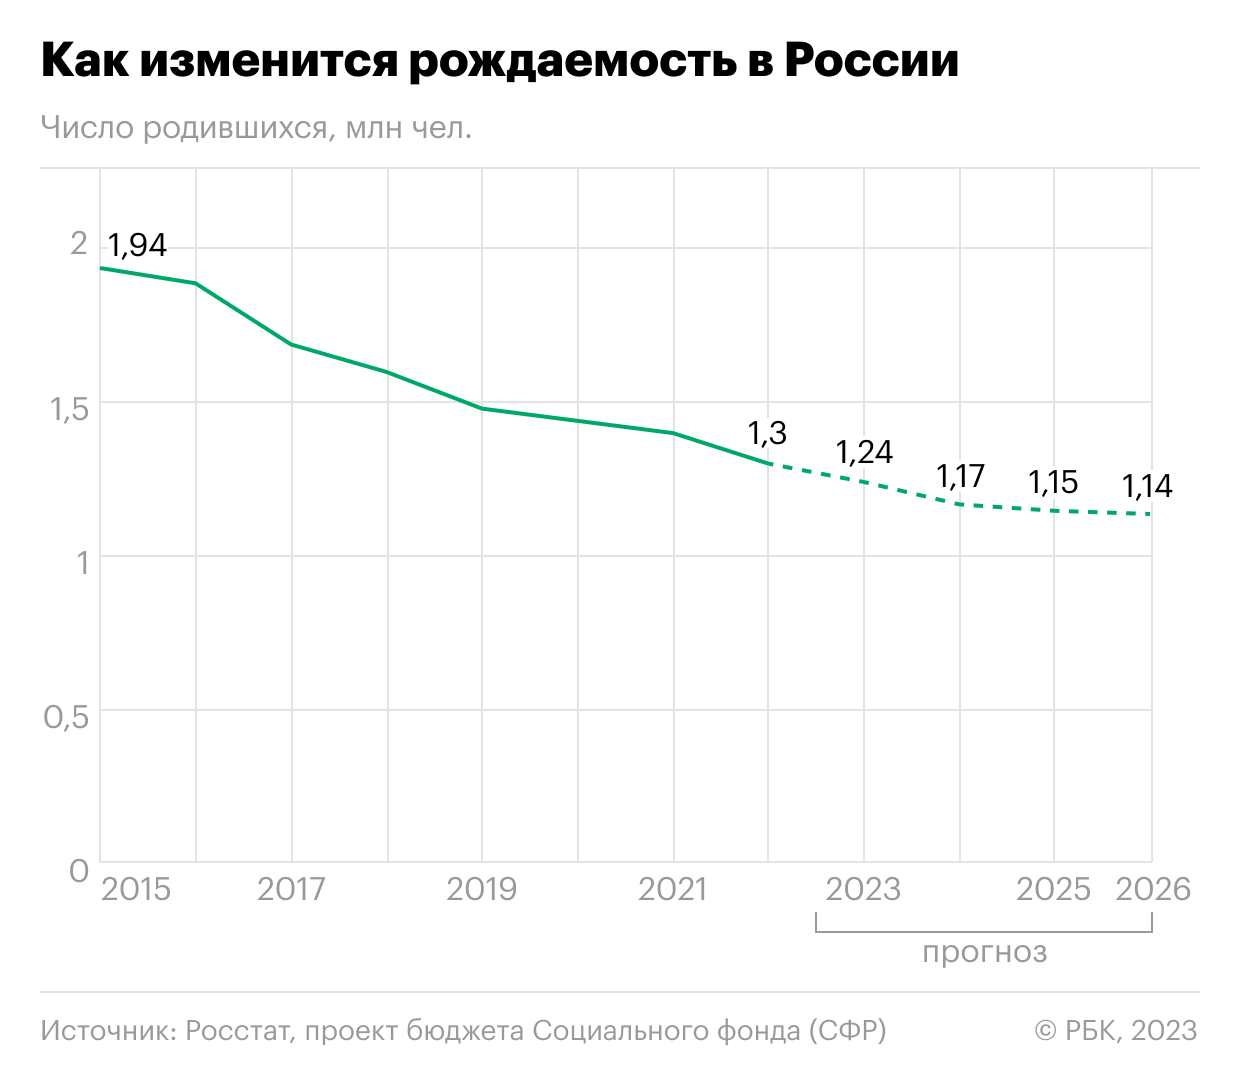 Почему падает рождаемость в России: главные причины и последствия